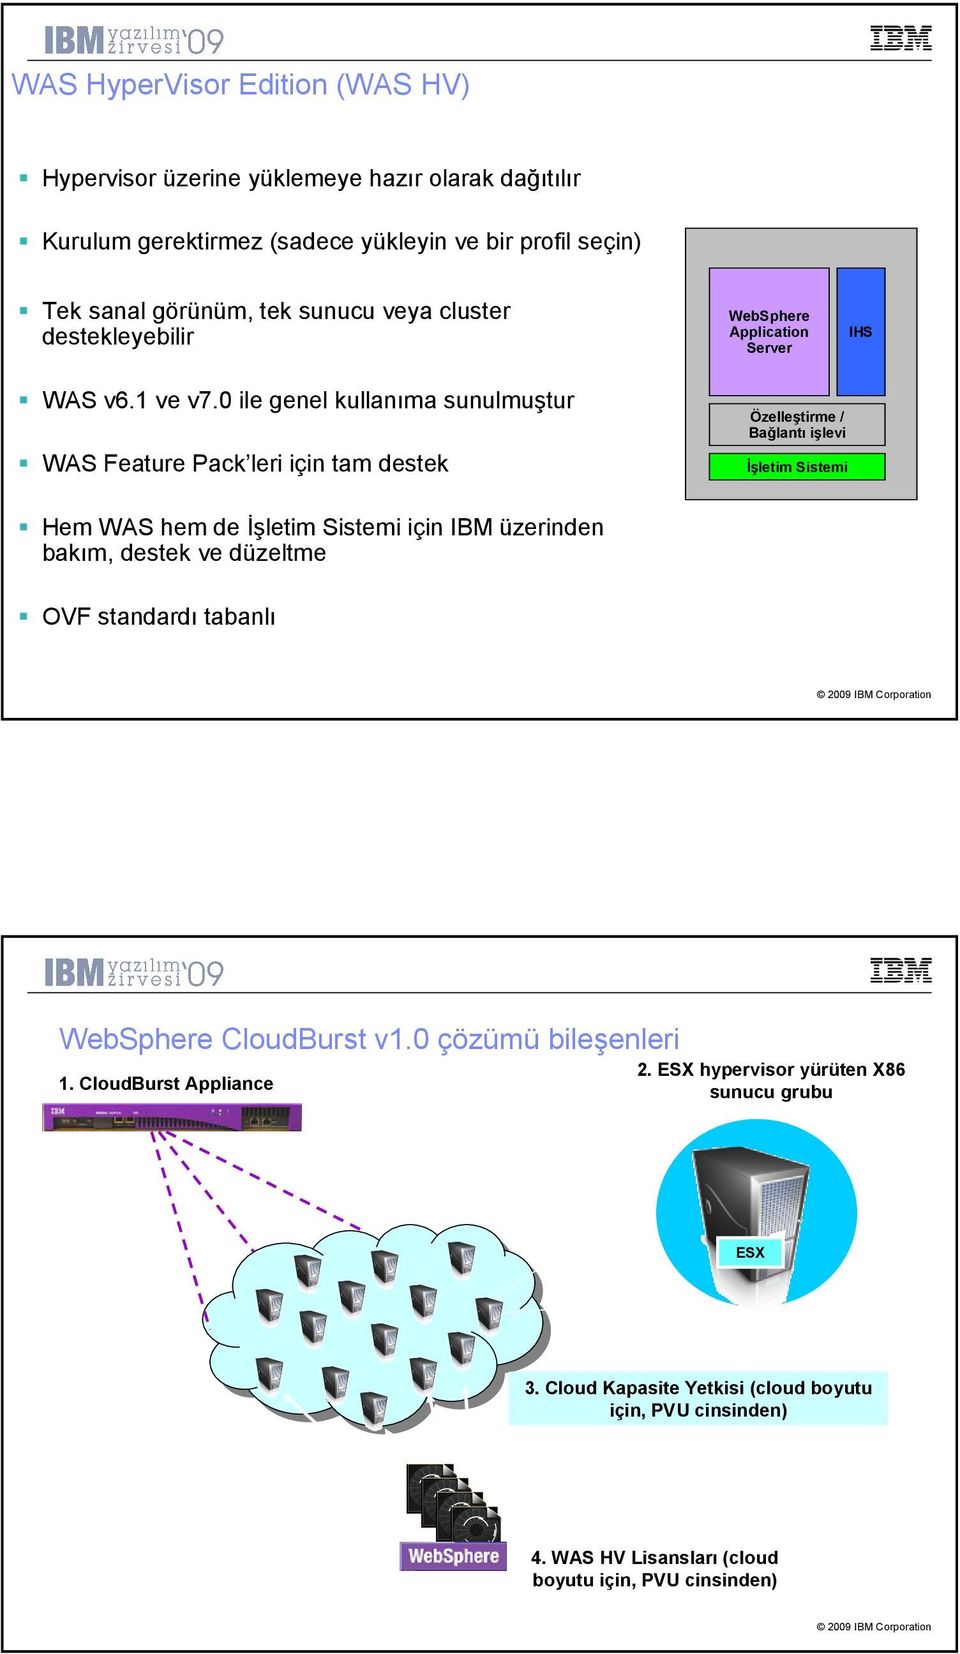 0 ile genel kullanıma sunulmuştur Feature Pack leri için tam destek Özelleştirme / Bağlantı işlevi Đşletim Sistemi Hem hem de Đşletim Sistemi için IBM üzerinden bakım,